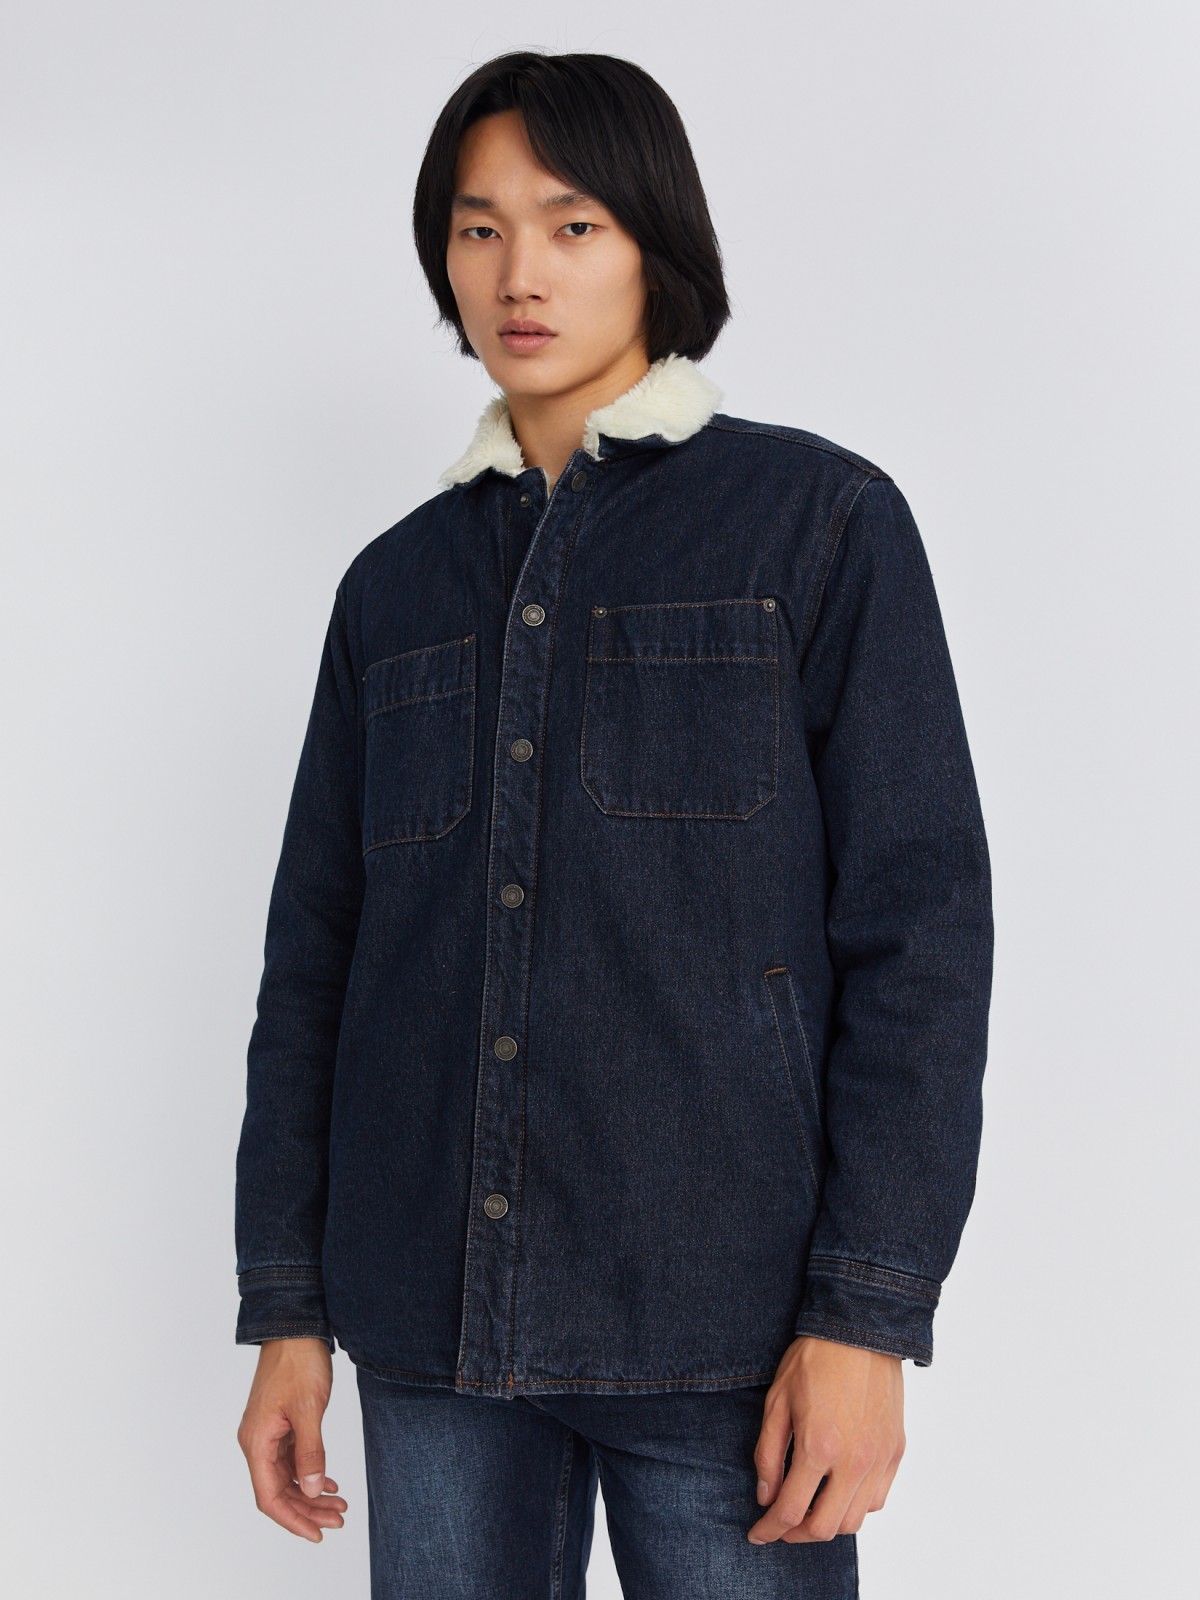 Утеплённая джинсовая куртка-рубашка с искусственным мехом zolla 212335W4S044, цвет голубой, размер S - фото 4